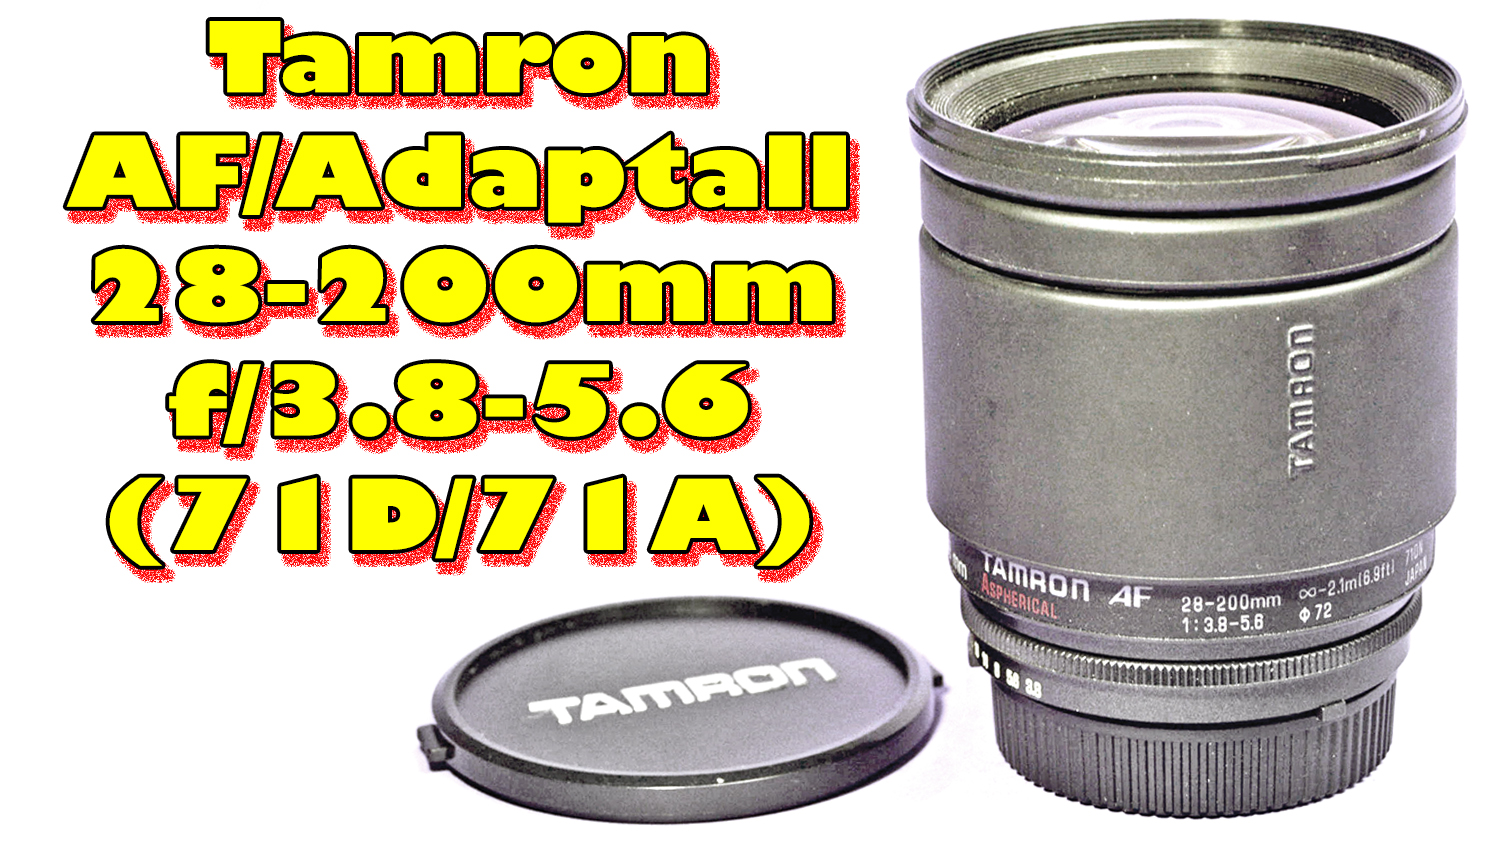 Tamron AF 28-200mm f/3.8-5.6 Aspherical (Model 71DN, 1992-1996)